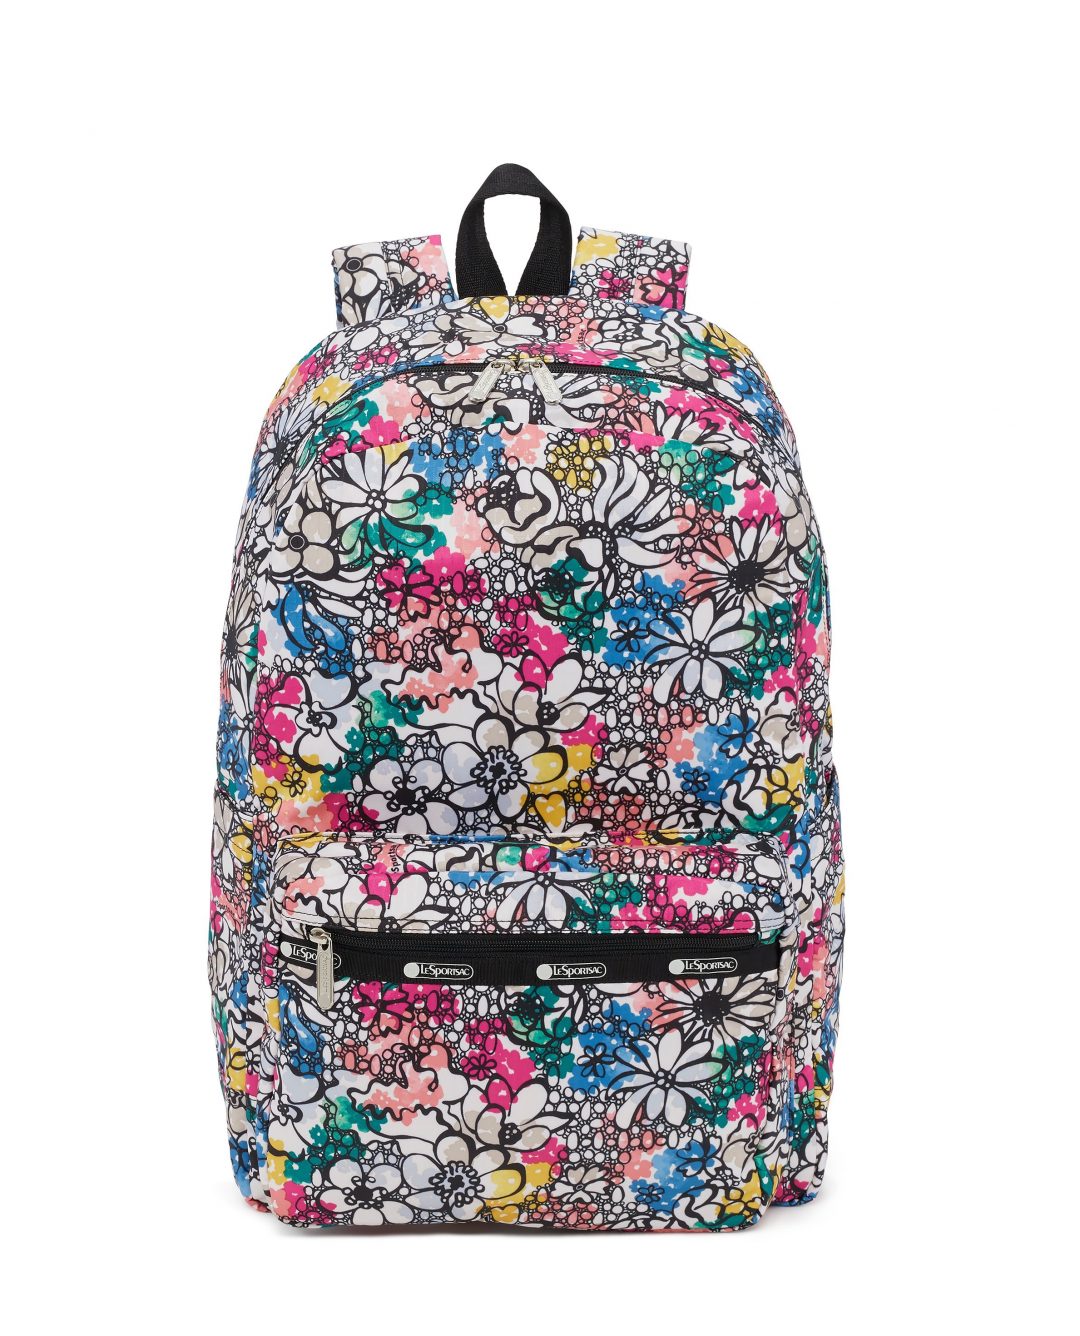 tween travel backpack